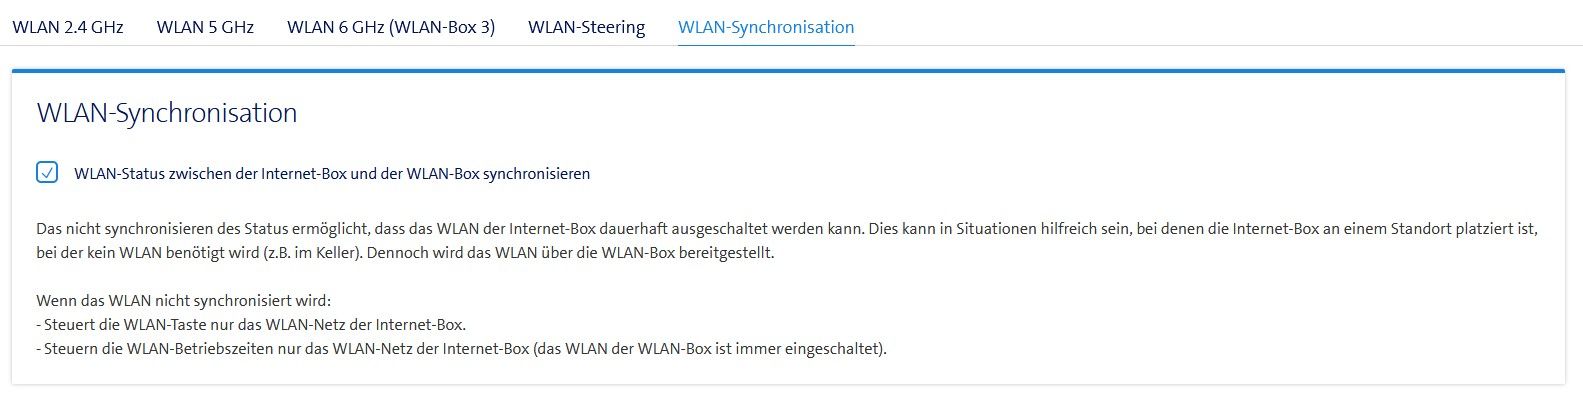 Synch-WLAN-IB3.jpg